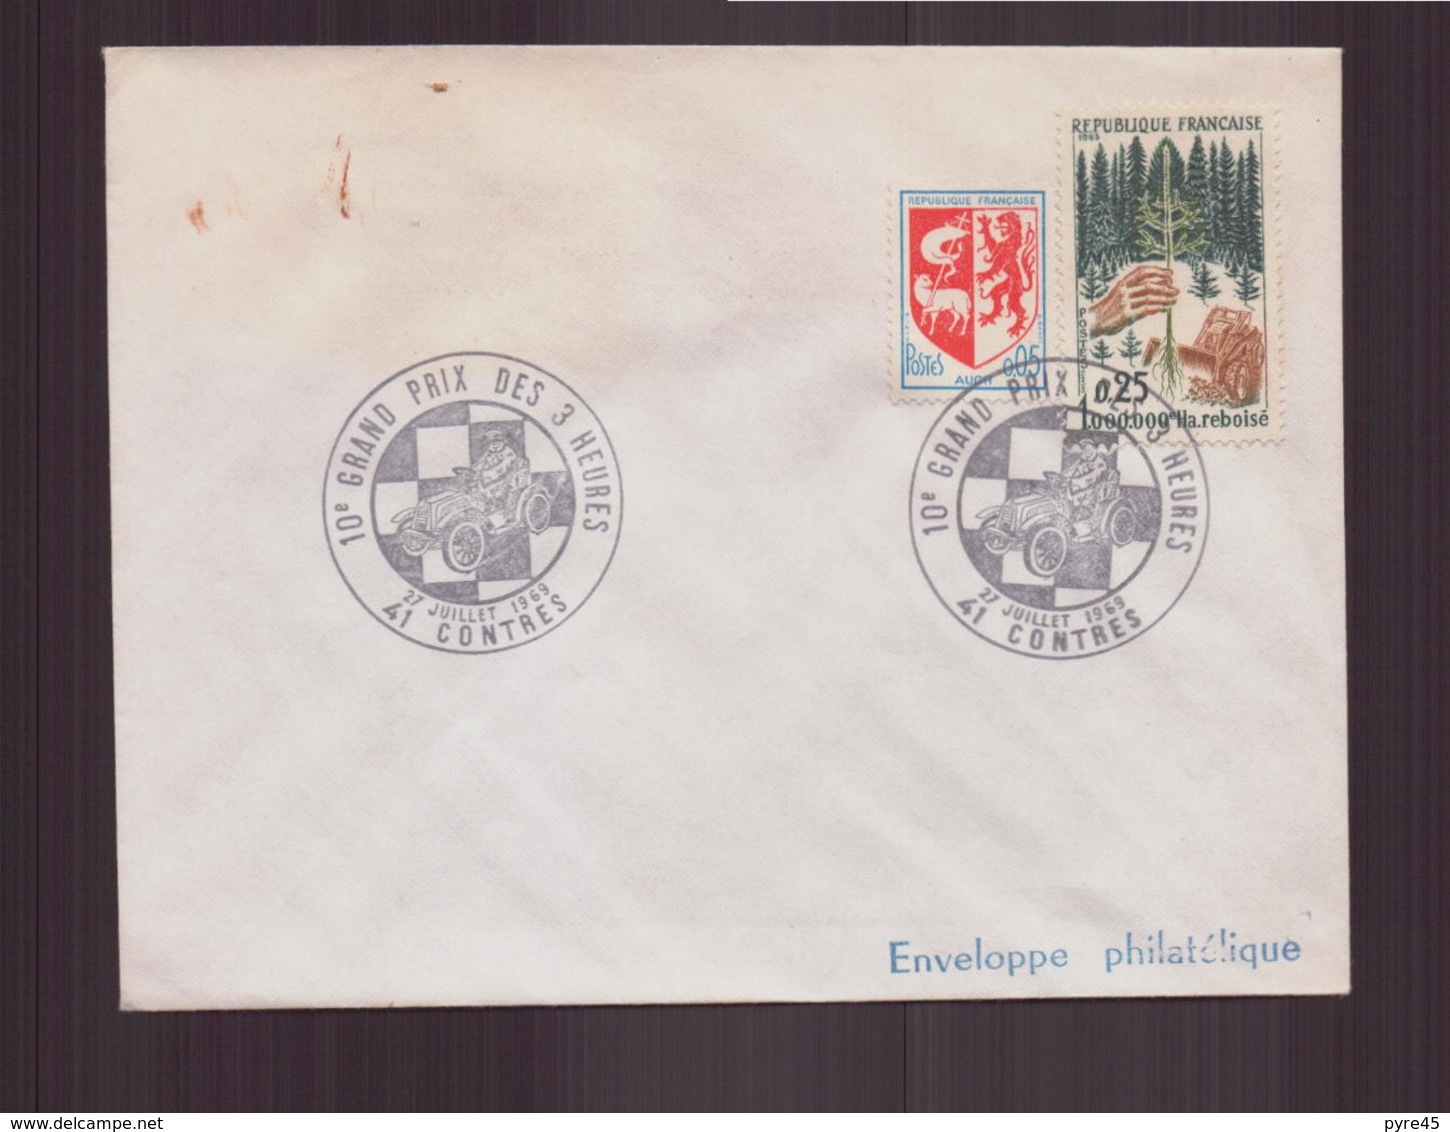 Enveloppe Avec Cachet Commémoratif " 10 ème Grand Prix Des 3 Heures " Du 27 Juillet 1969 à Contres - Cachets Commémoratifs